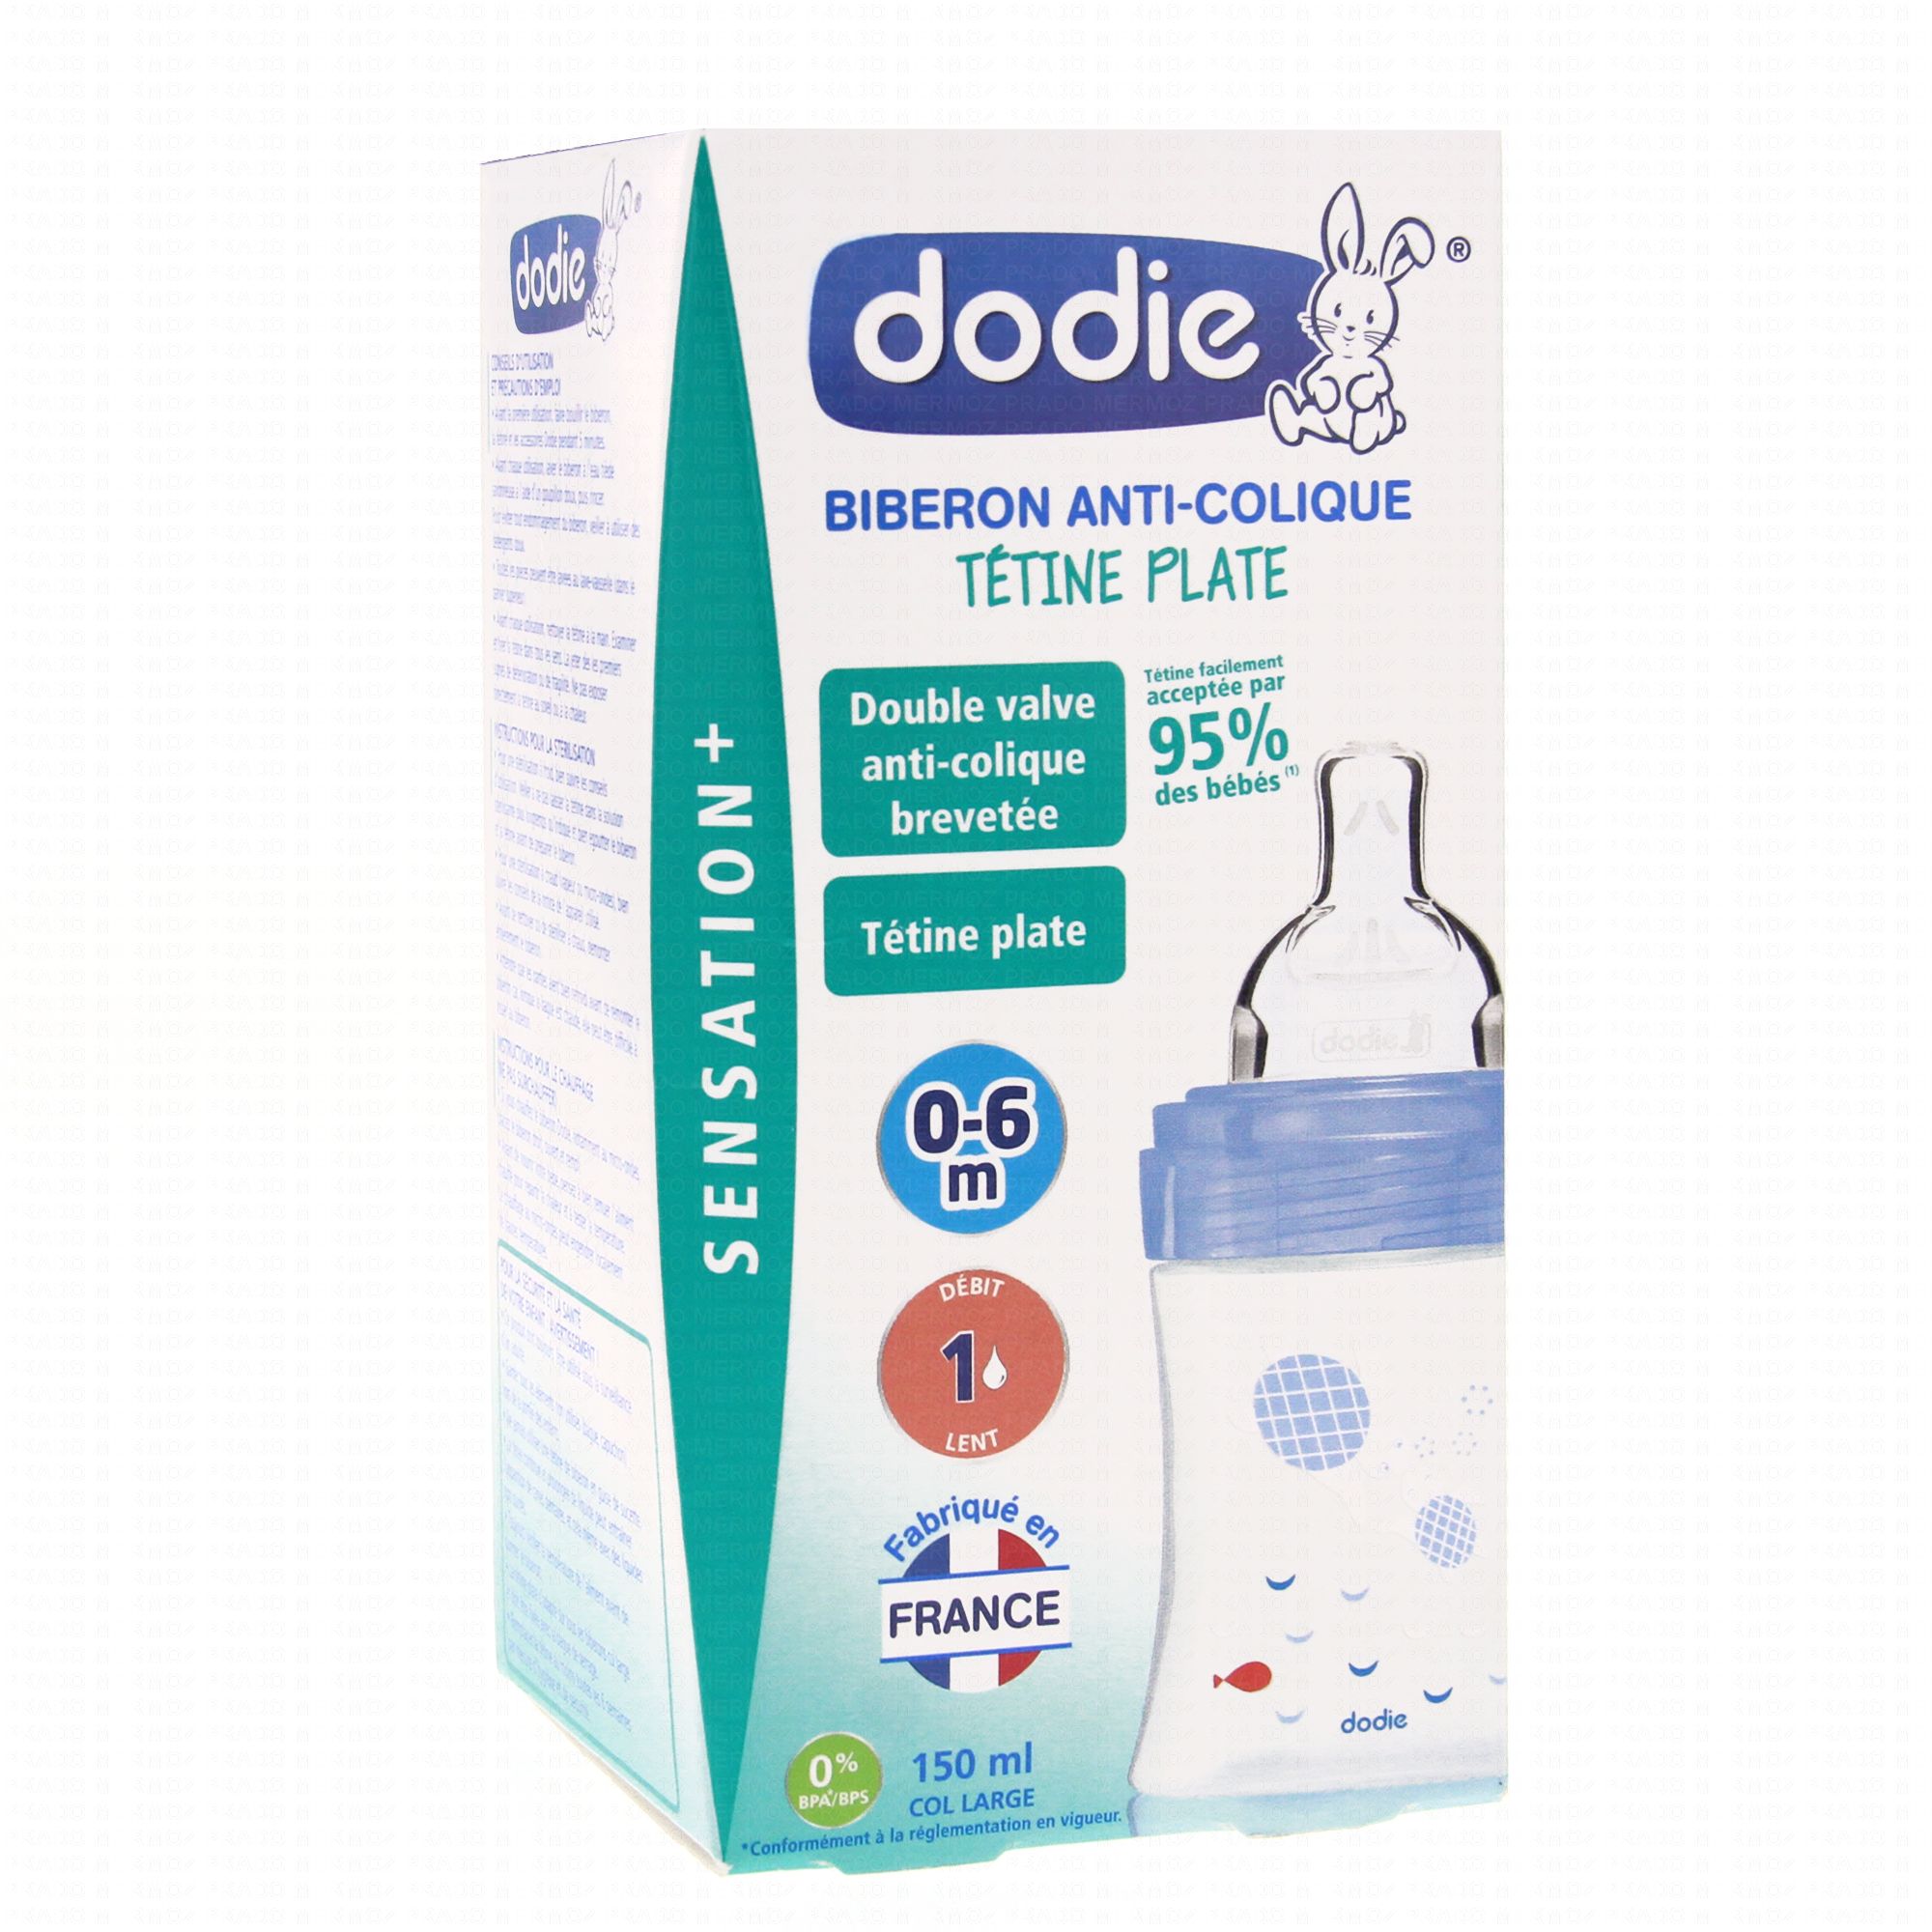 Dodie Sensation+ Biberon verre anti-colique débit 2 - 0-6 mois